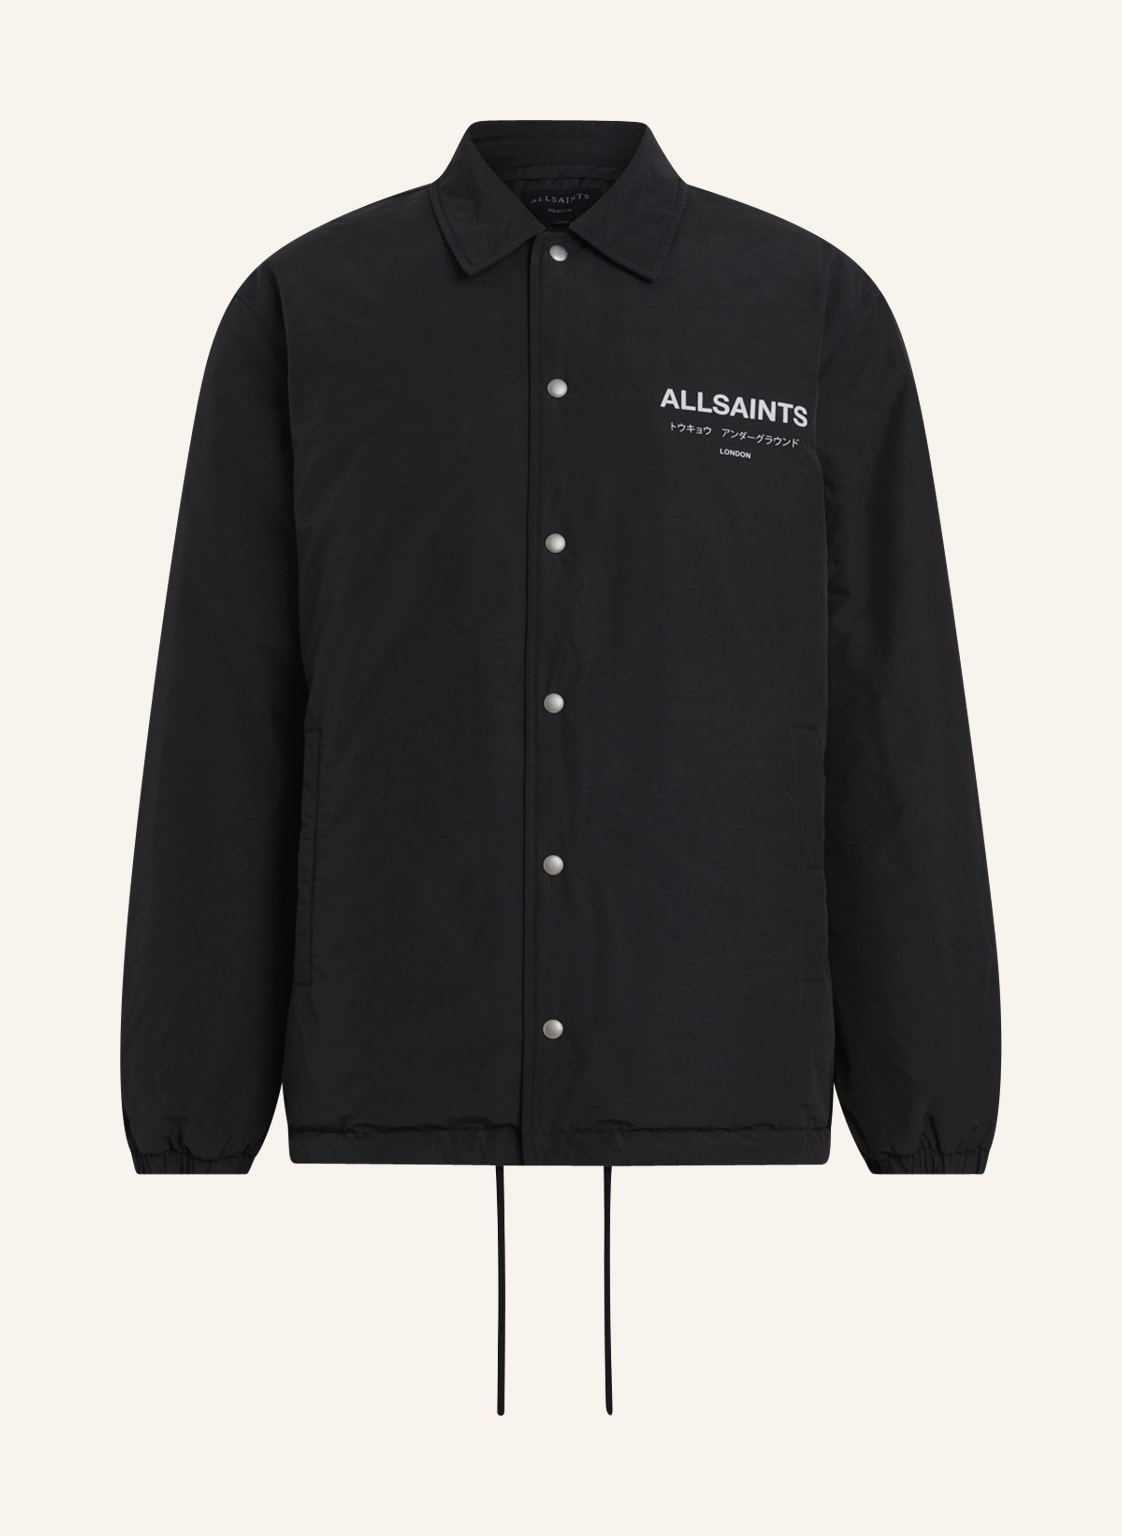 Allsaints Jacke Undrgrnd schwarz von AllSaints